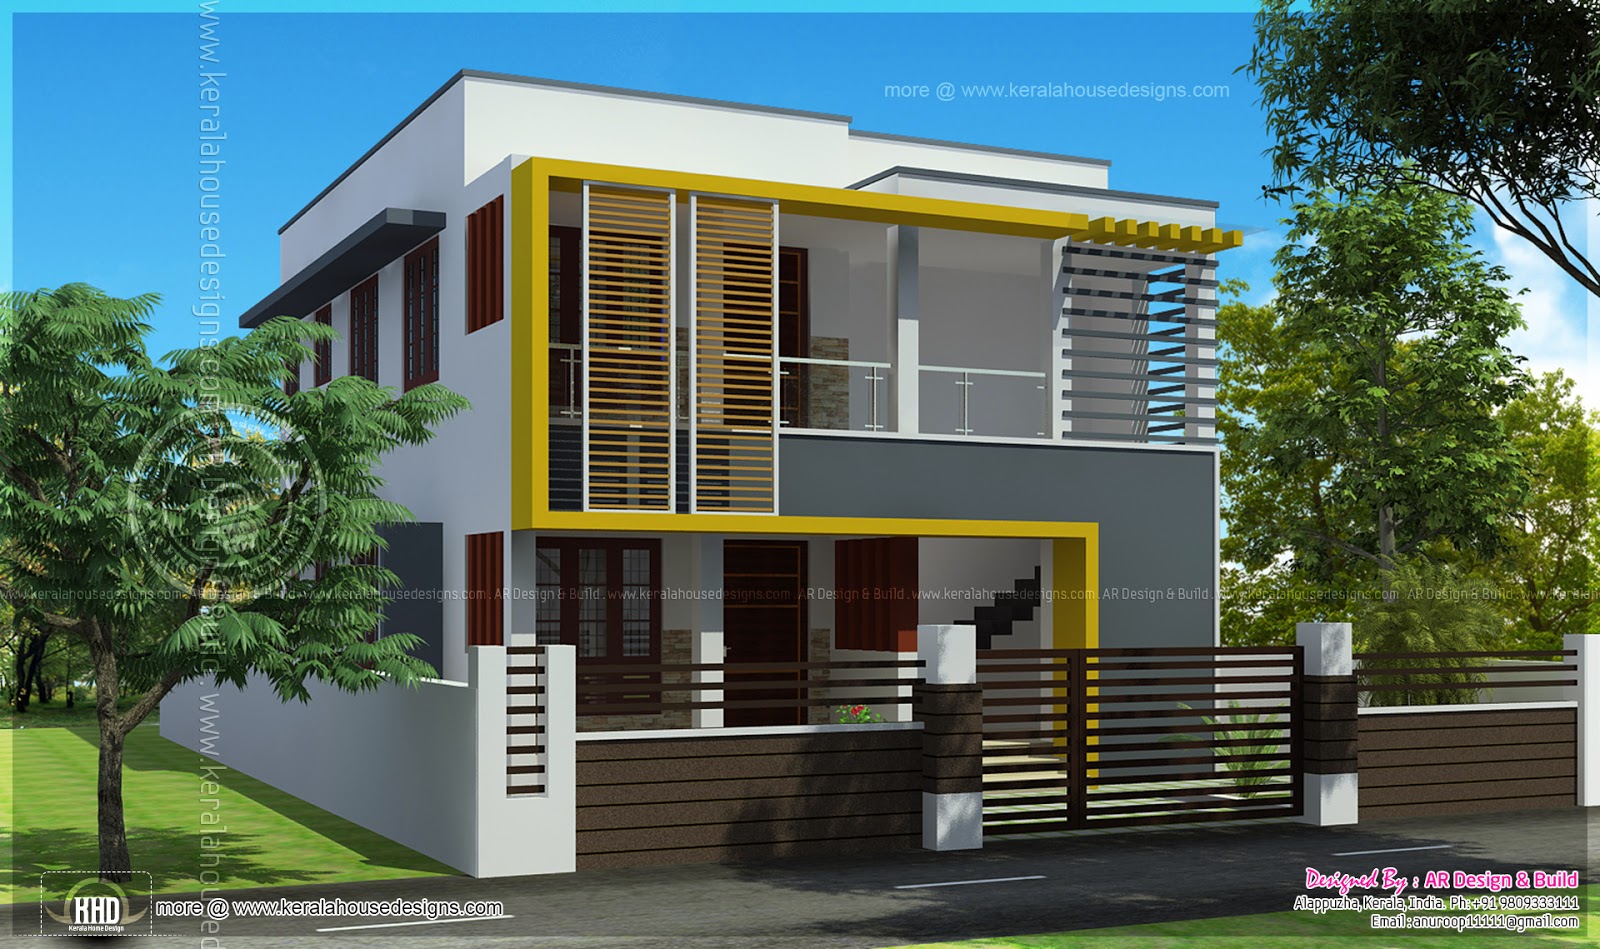  Duplex  house  elevation 1000  sq  feet  each Kerala home  